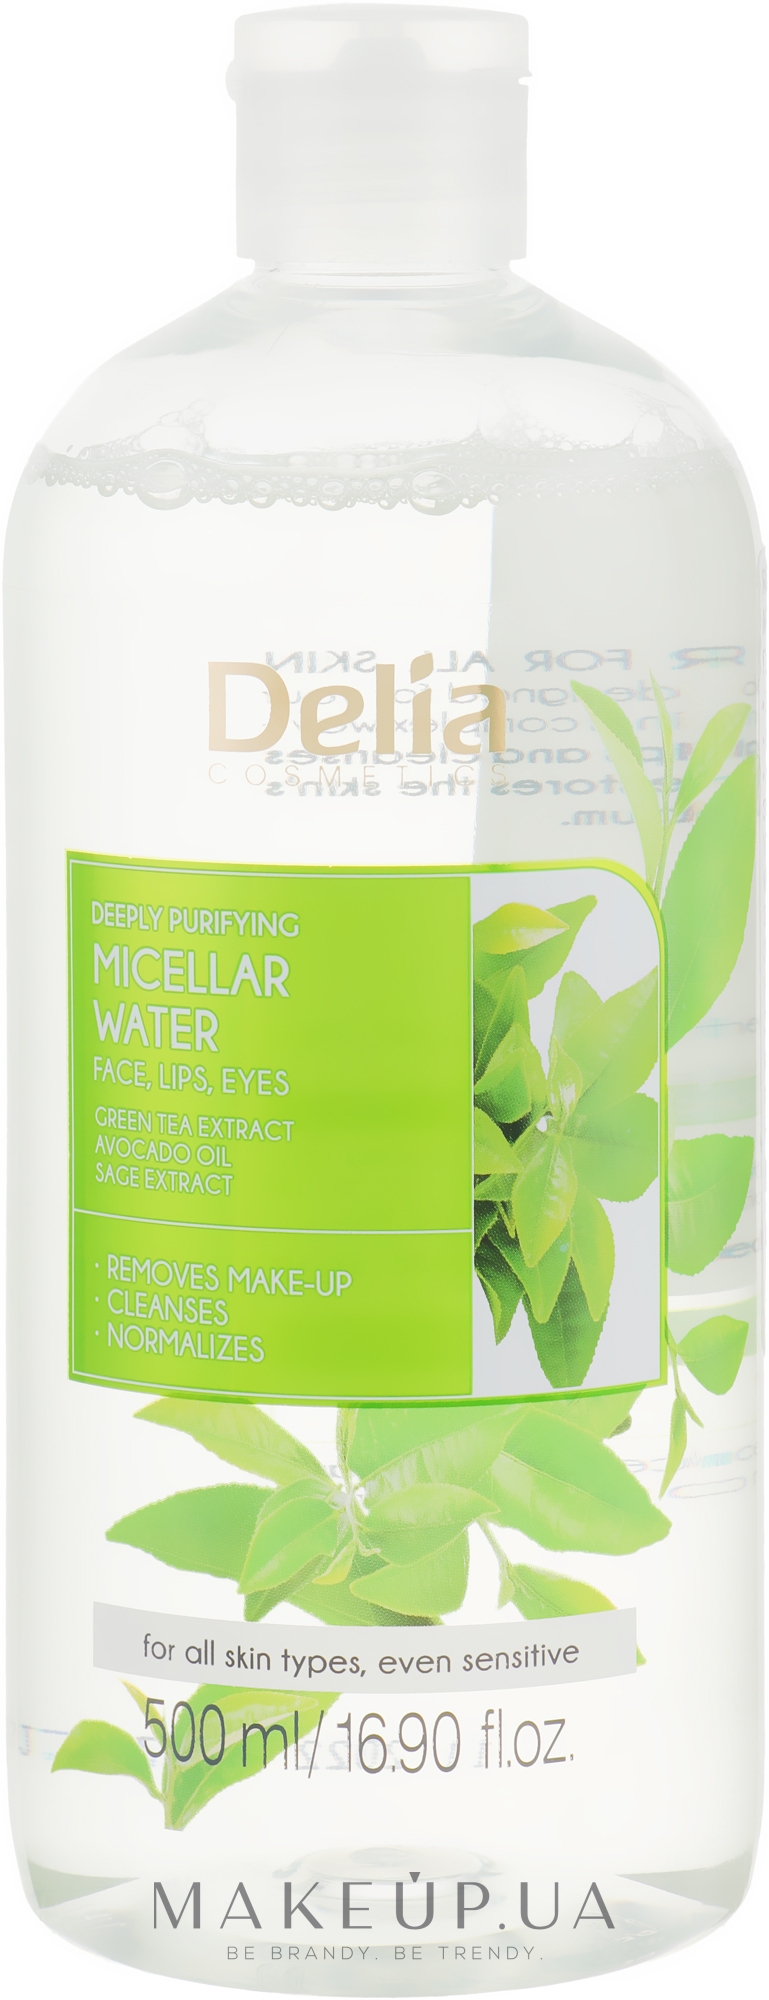 Глубоко очищающая мицеллярная вода с экстрактом зеленого чая - Delia Cosmetics Green Tea Extract Micellar Water — фото 500ml